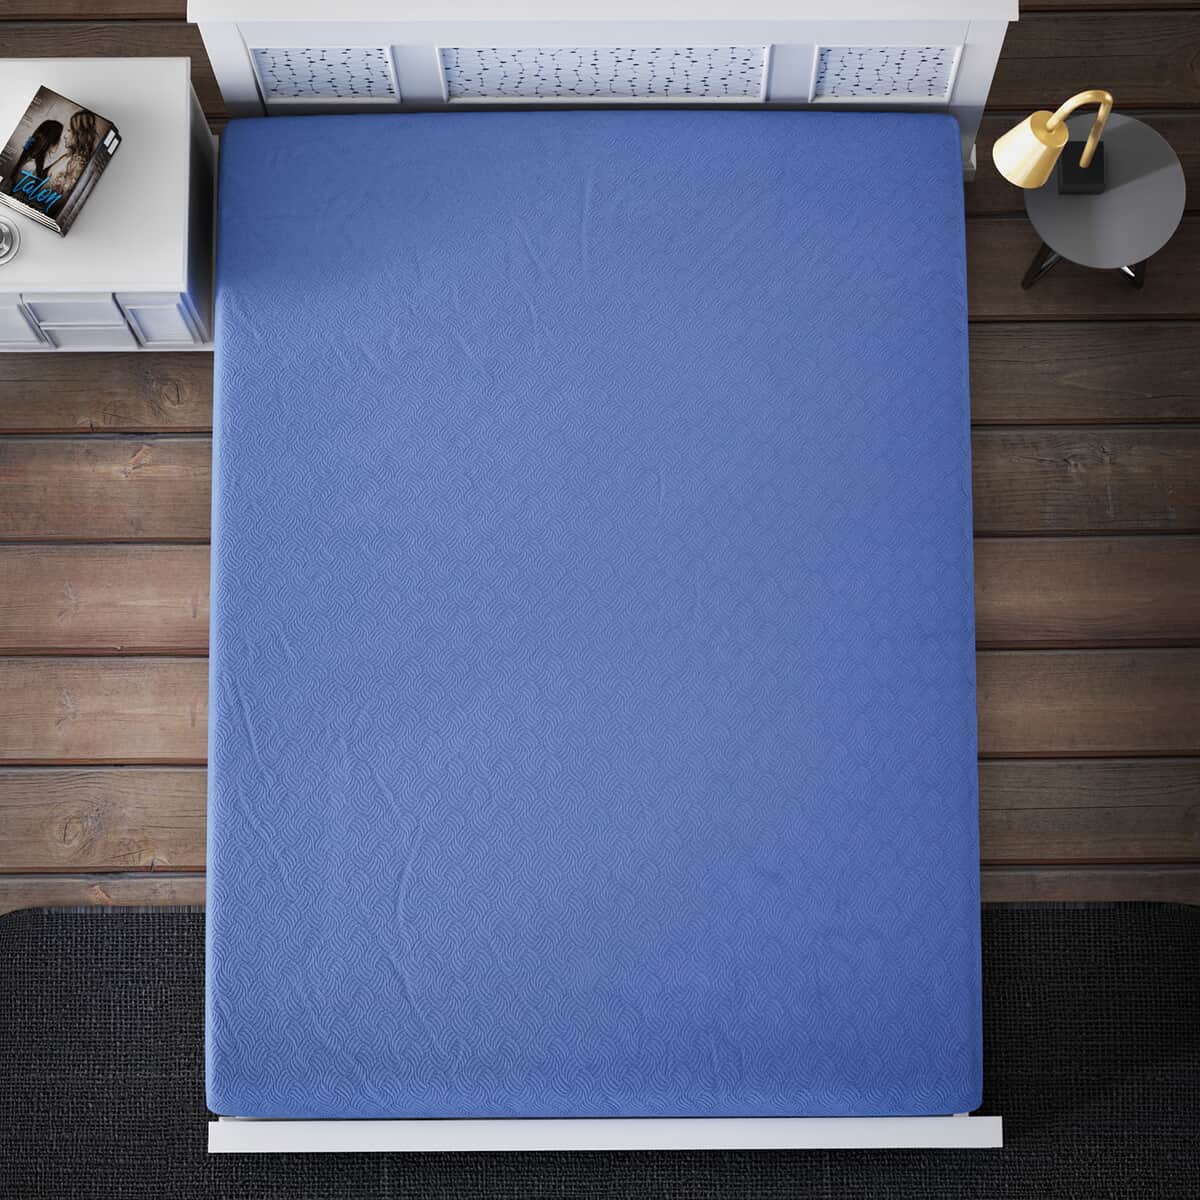 Homesmart Blue Solid Embossed 6 pcs Microfiber Sheet Set - King, Bed Sheets, Fitted Sheet, Bed Sheet Set, Microfiber Sheets image number 6